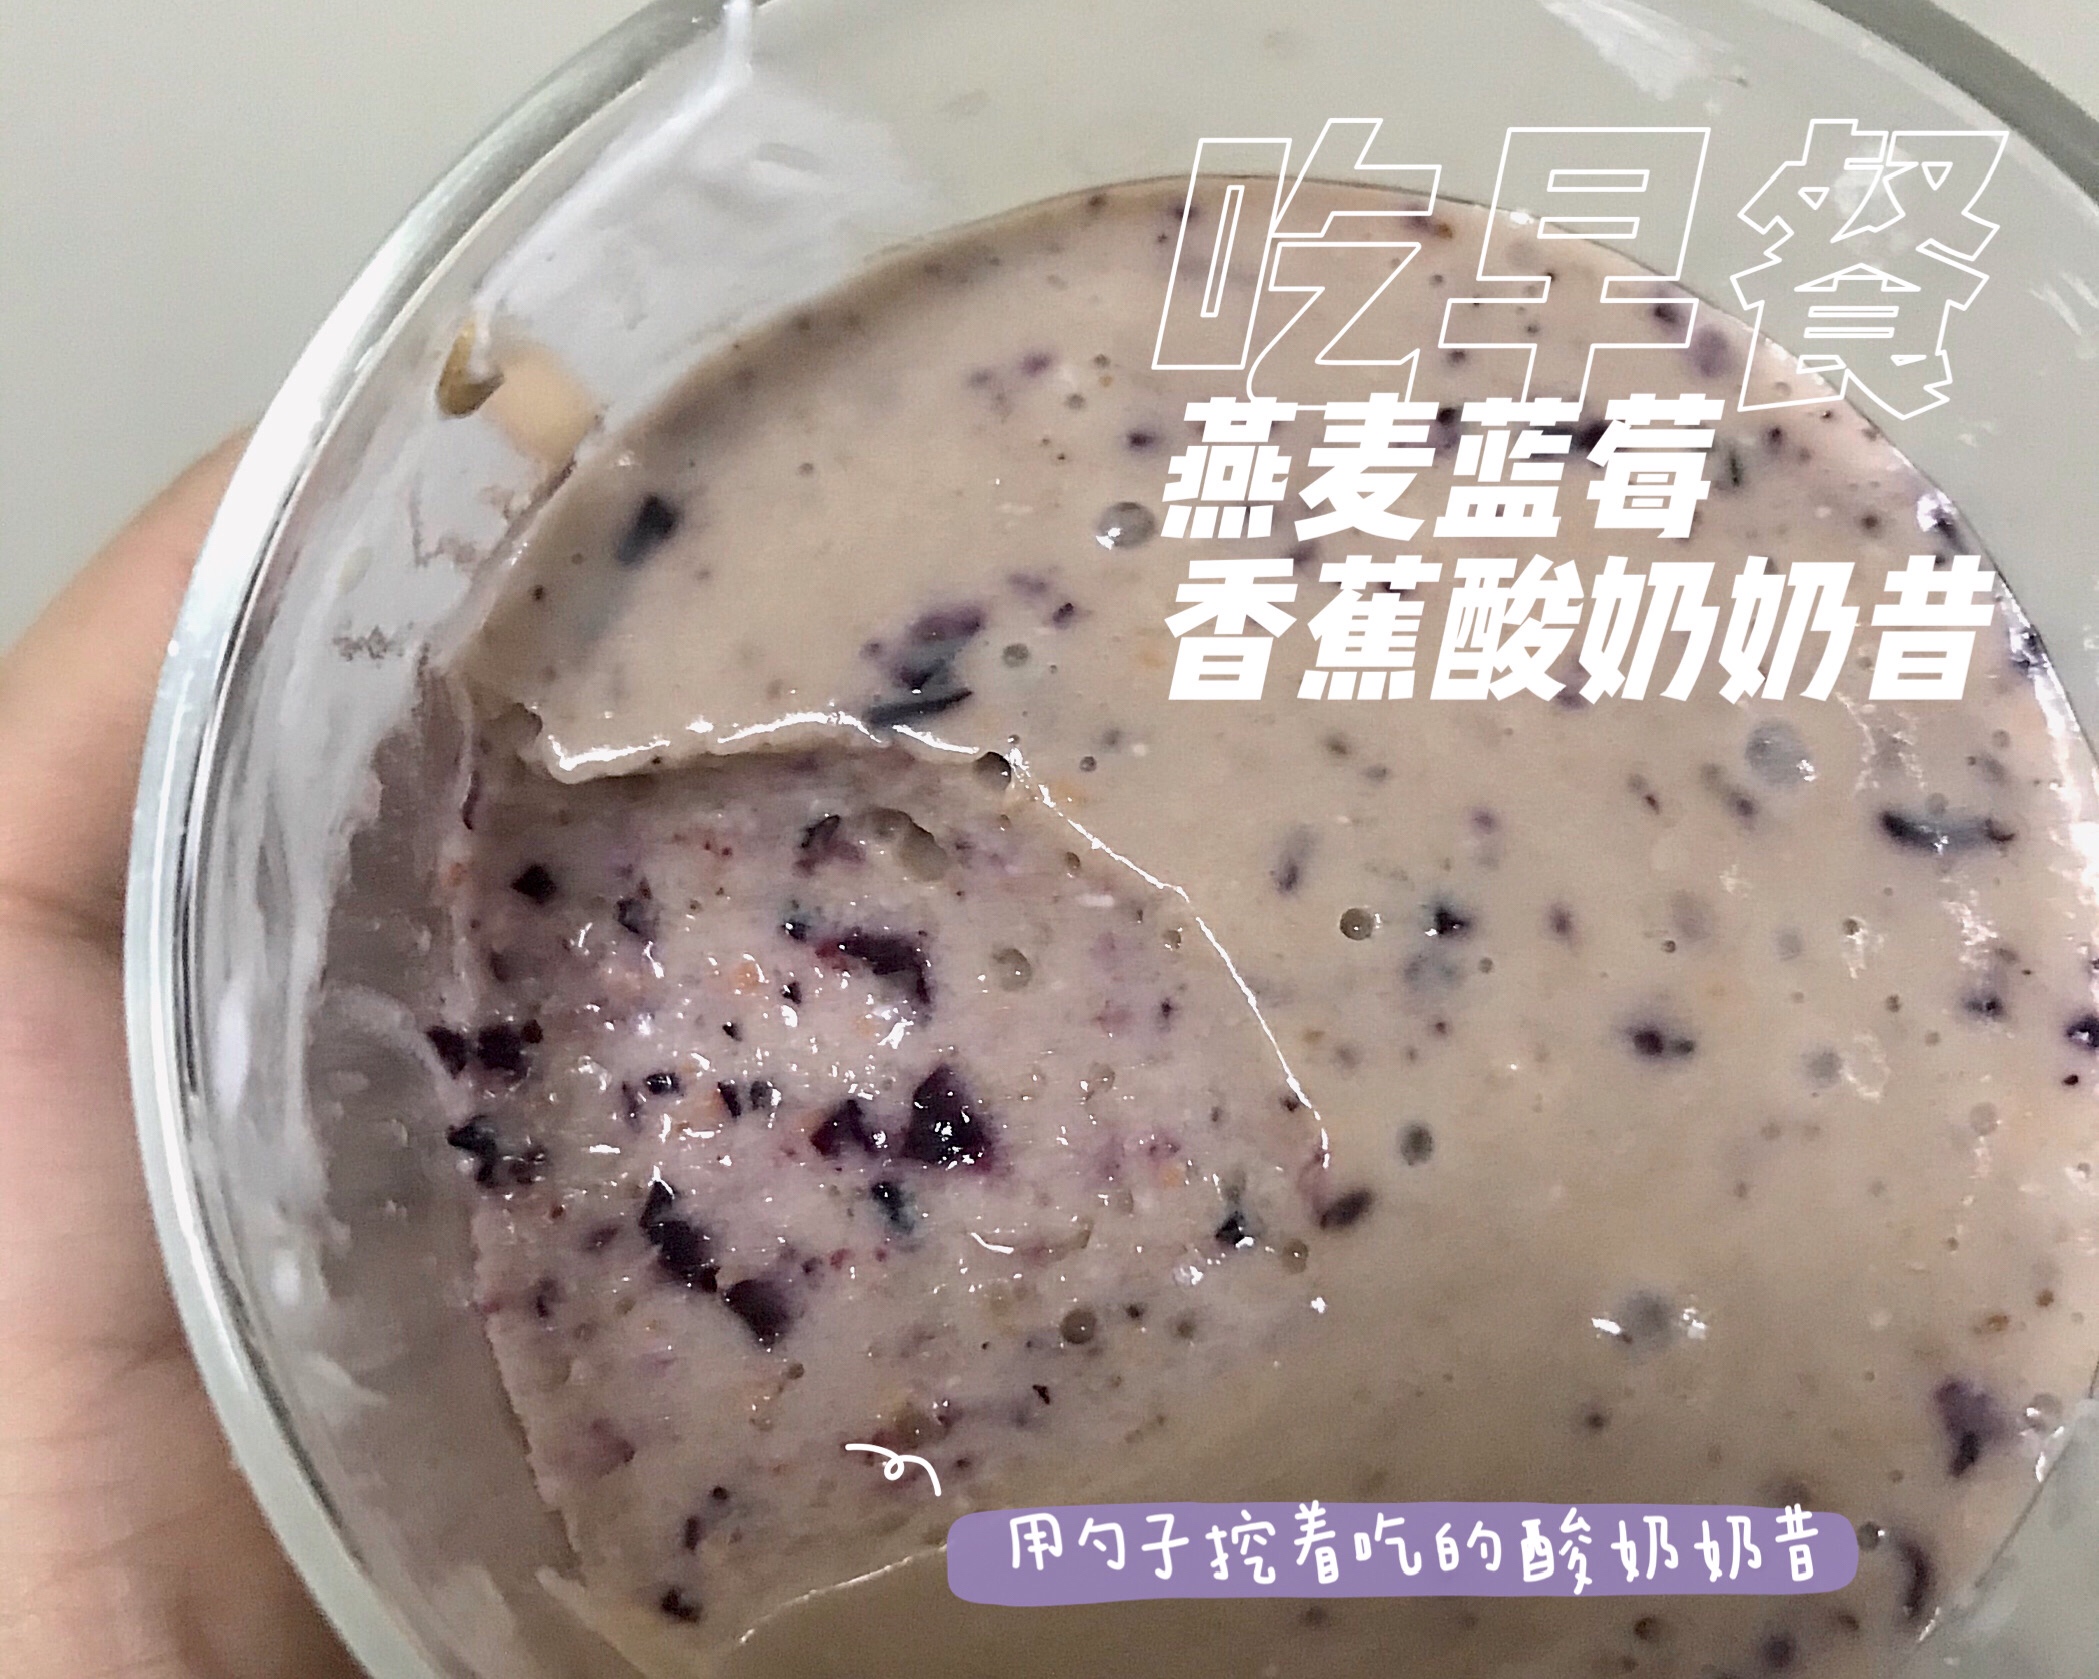 用勺子挖着吃的蓝莓酸奶奶昔/酸奶燕麦粥的做法